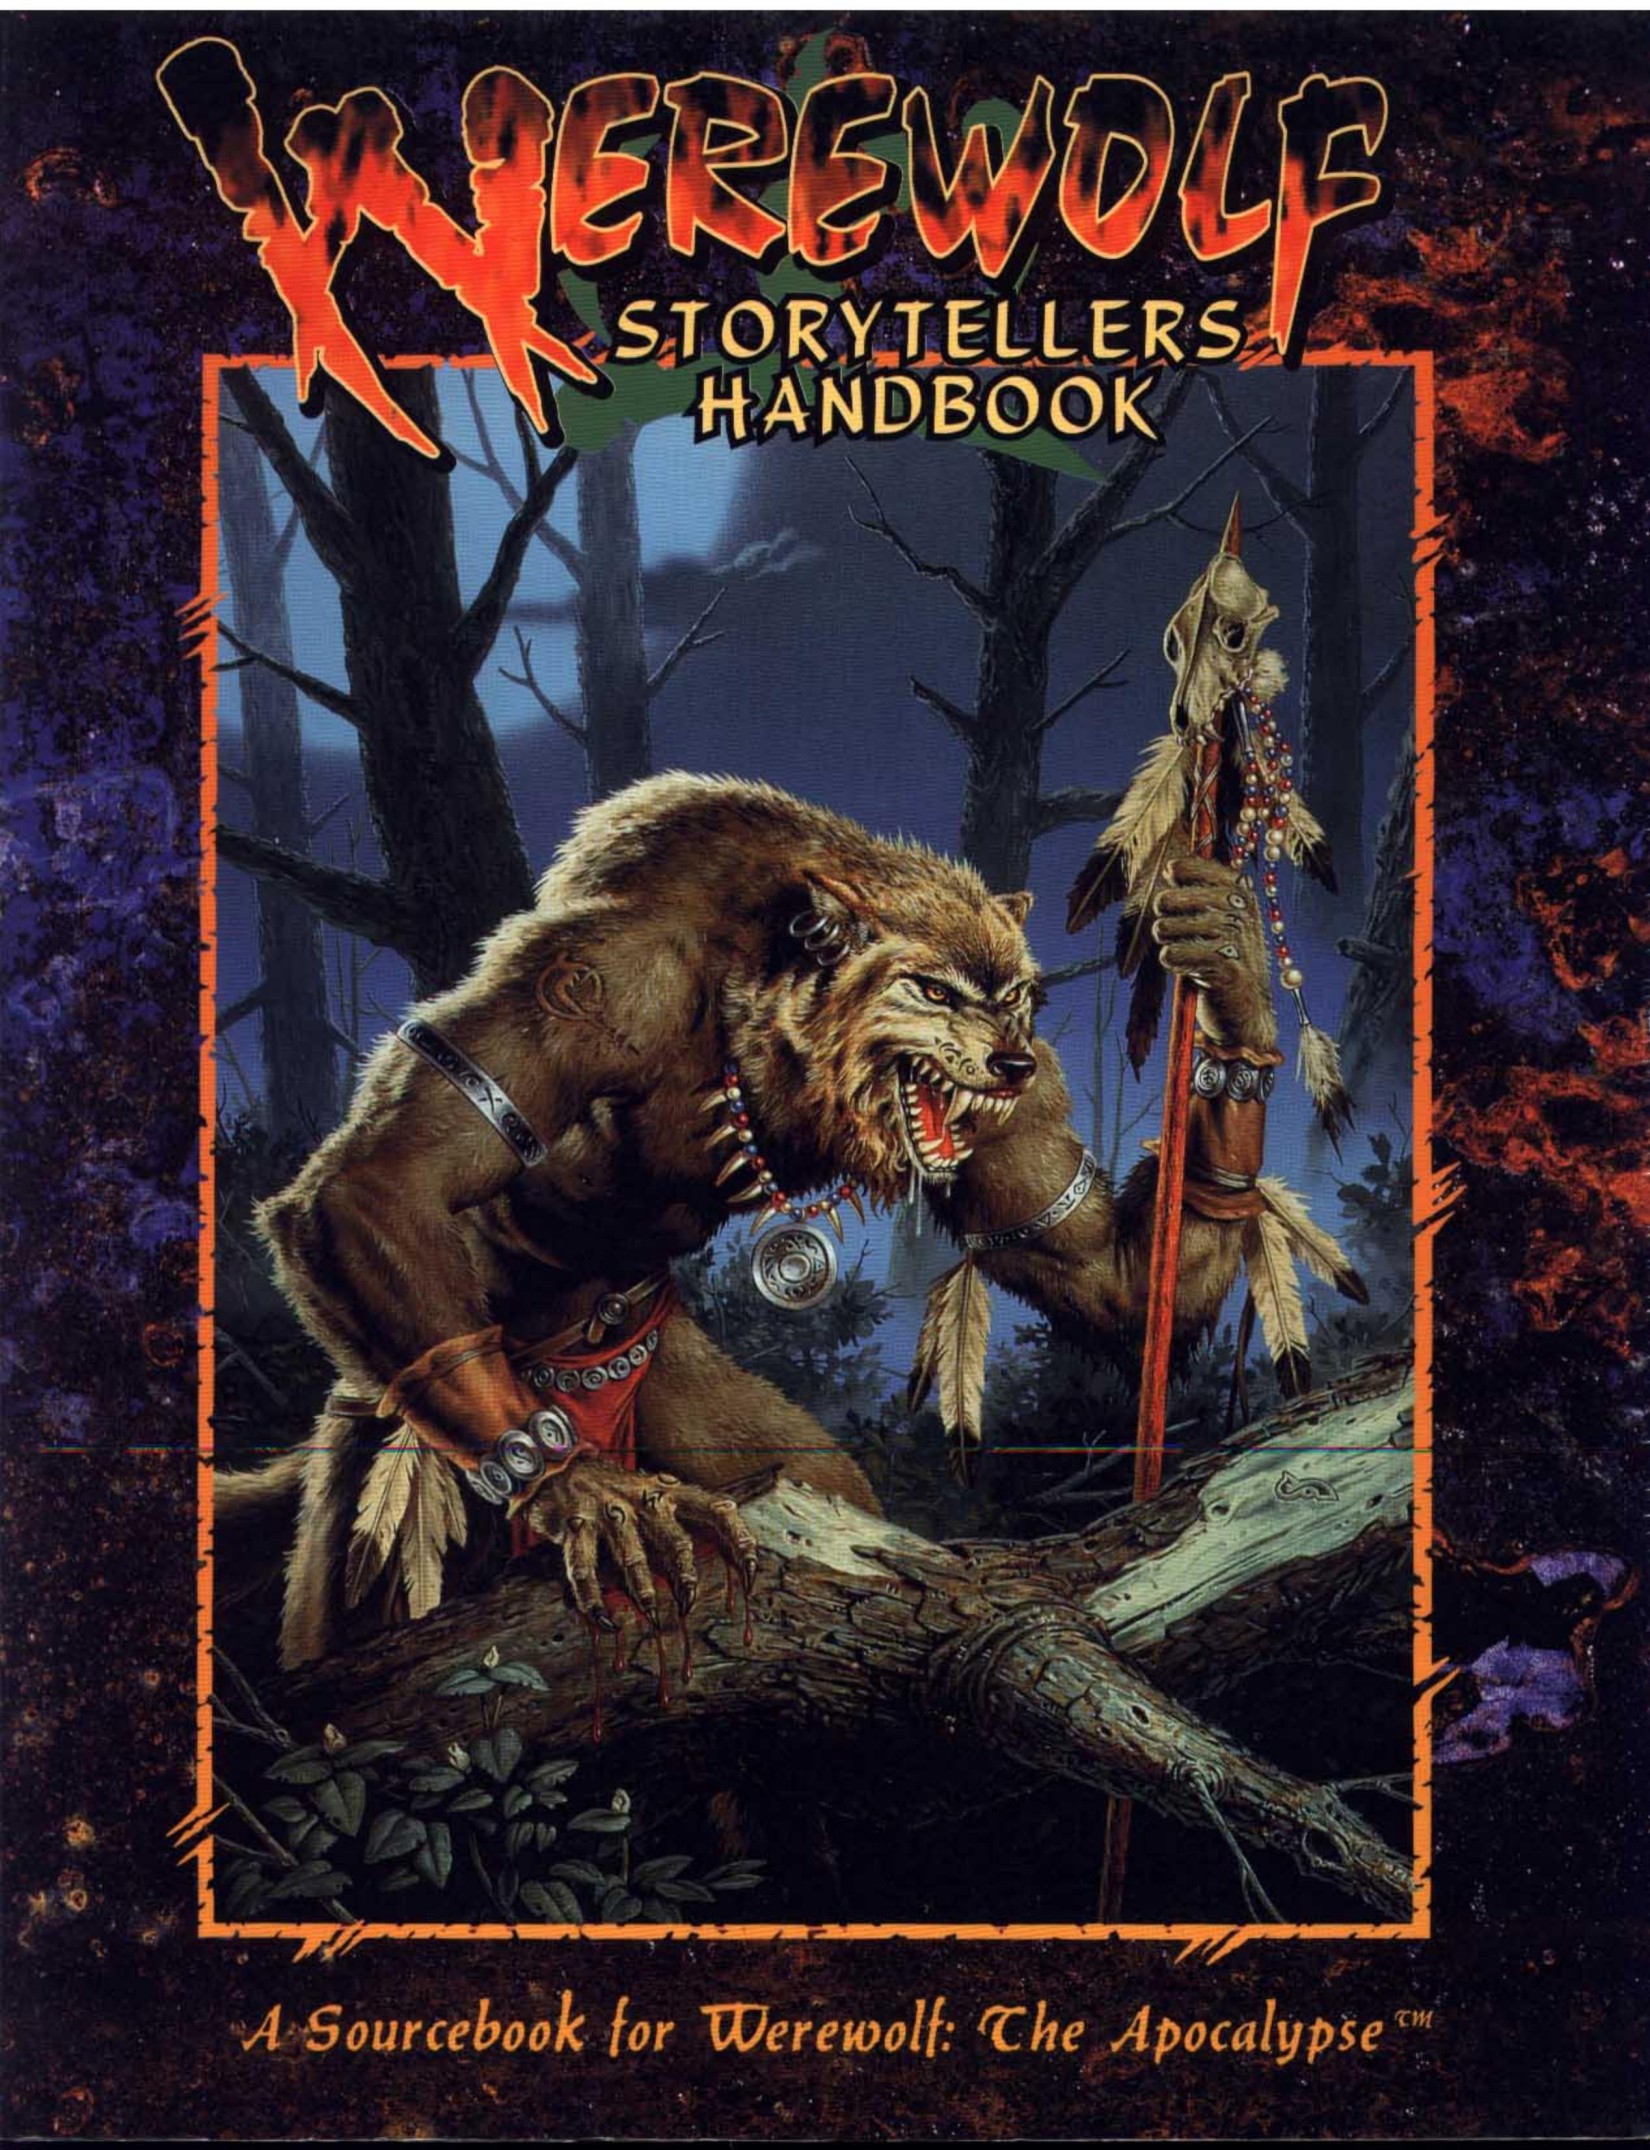 Storytellers Handbook (1994)